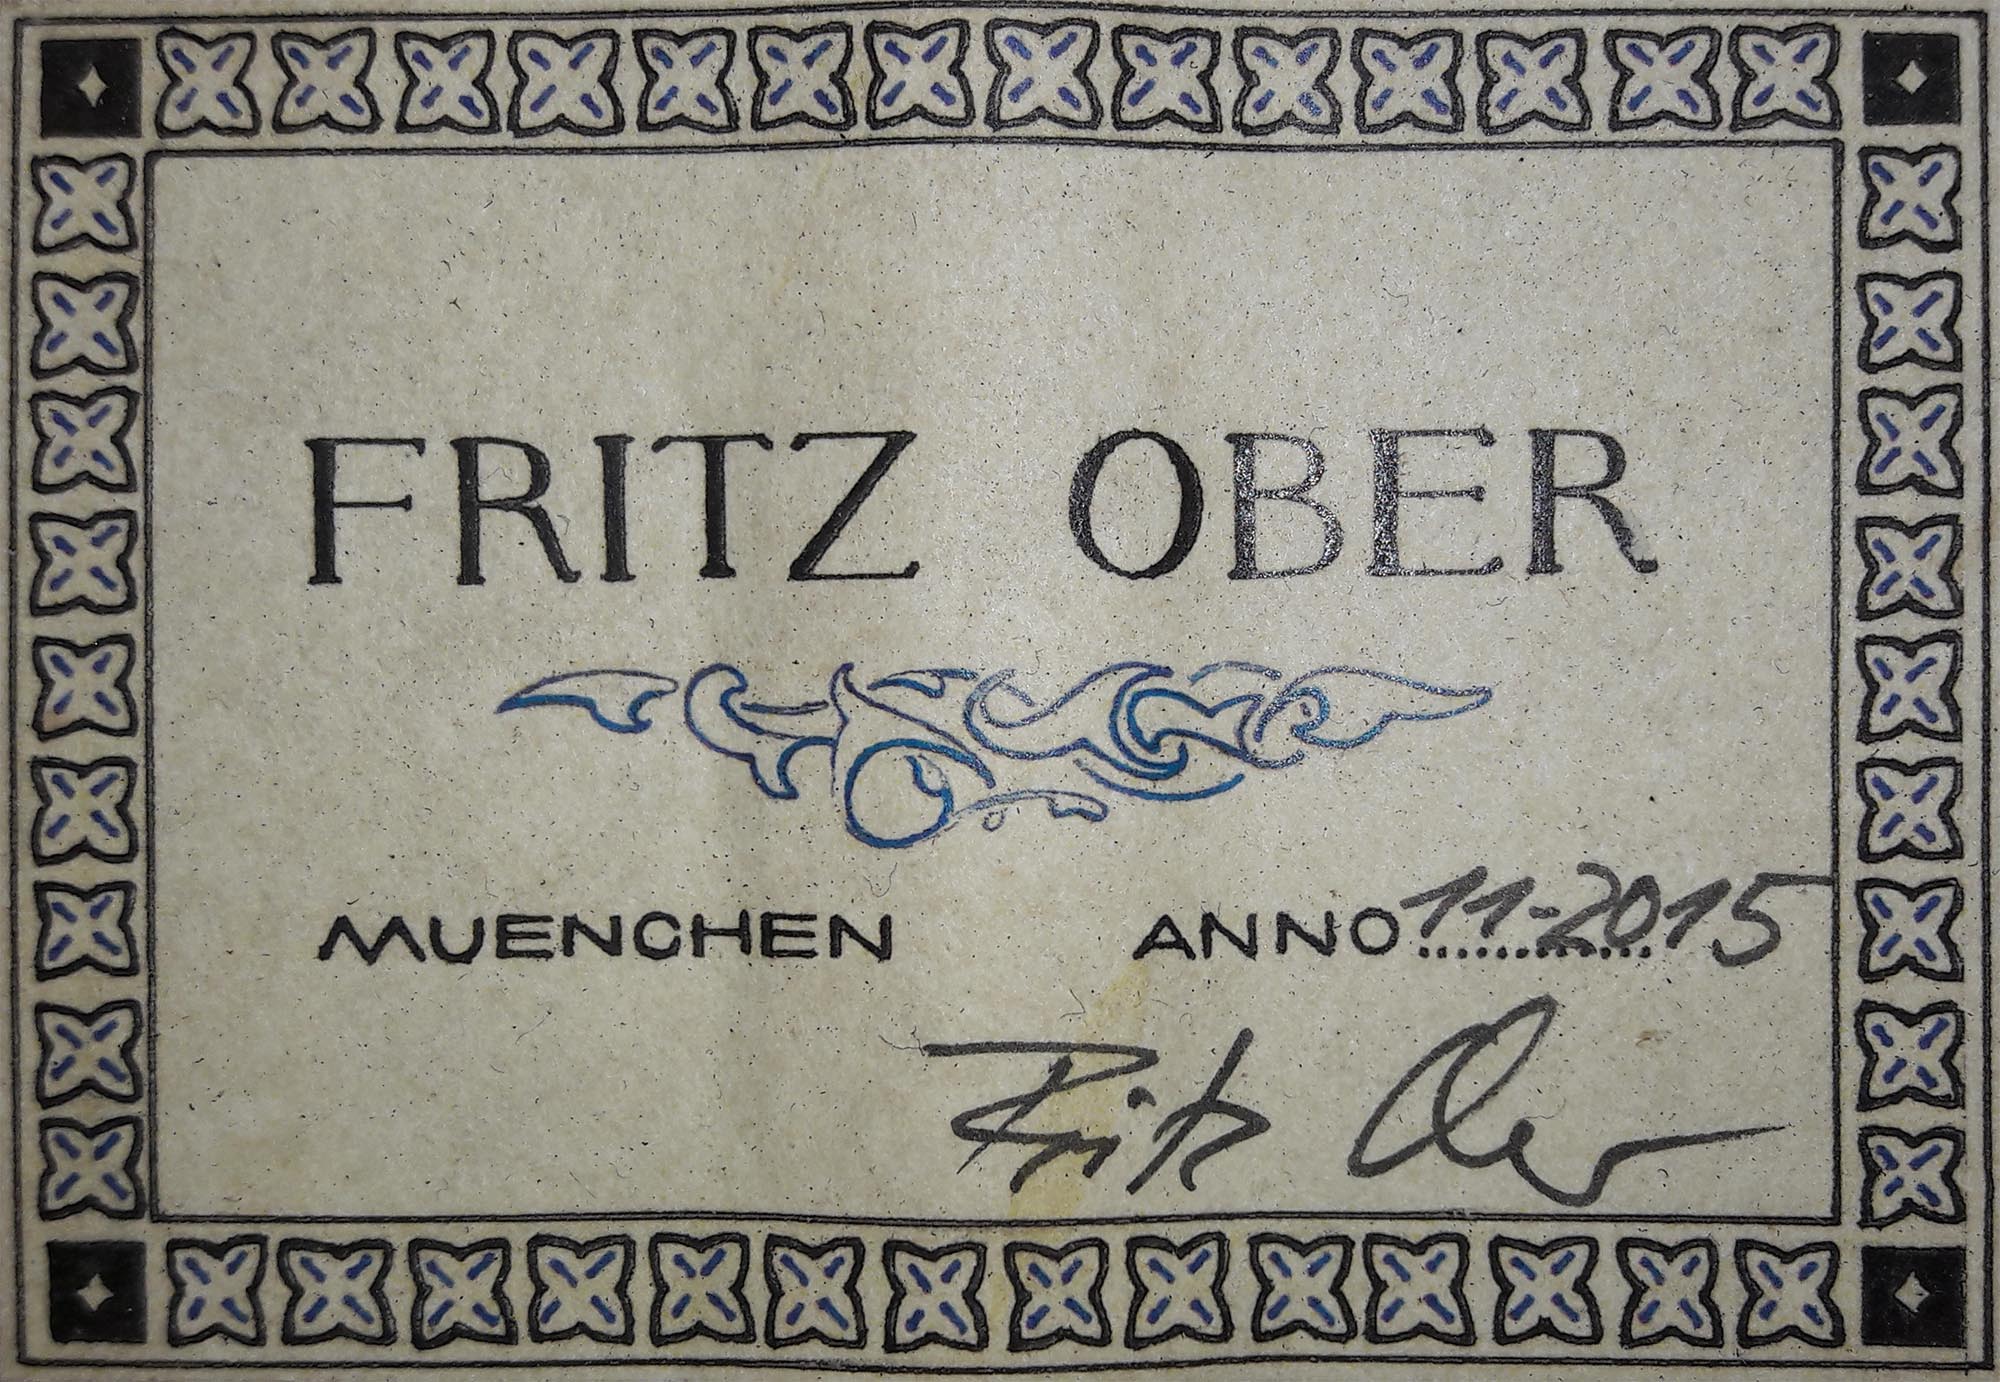 a fritz ober 2015 19052018 label